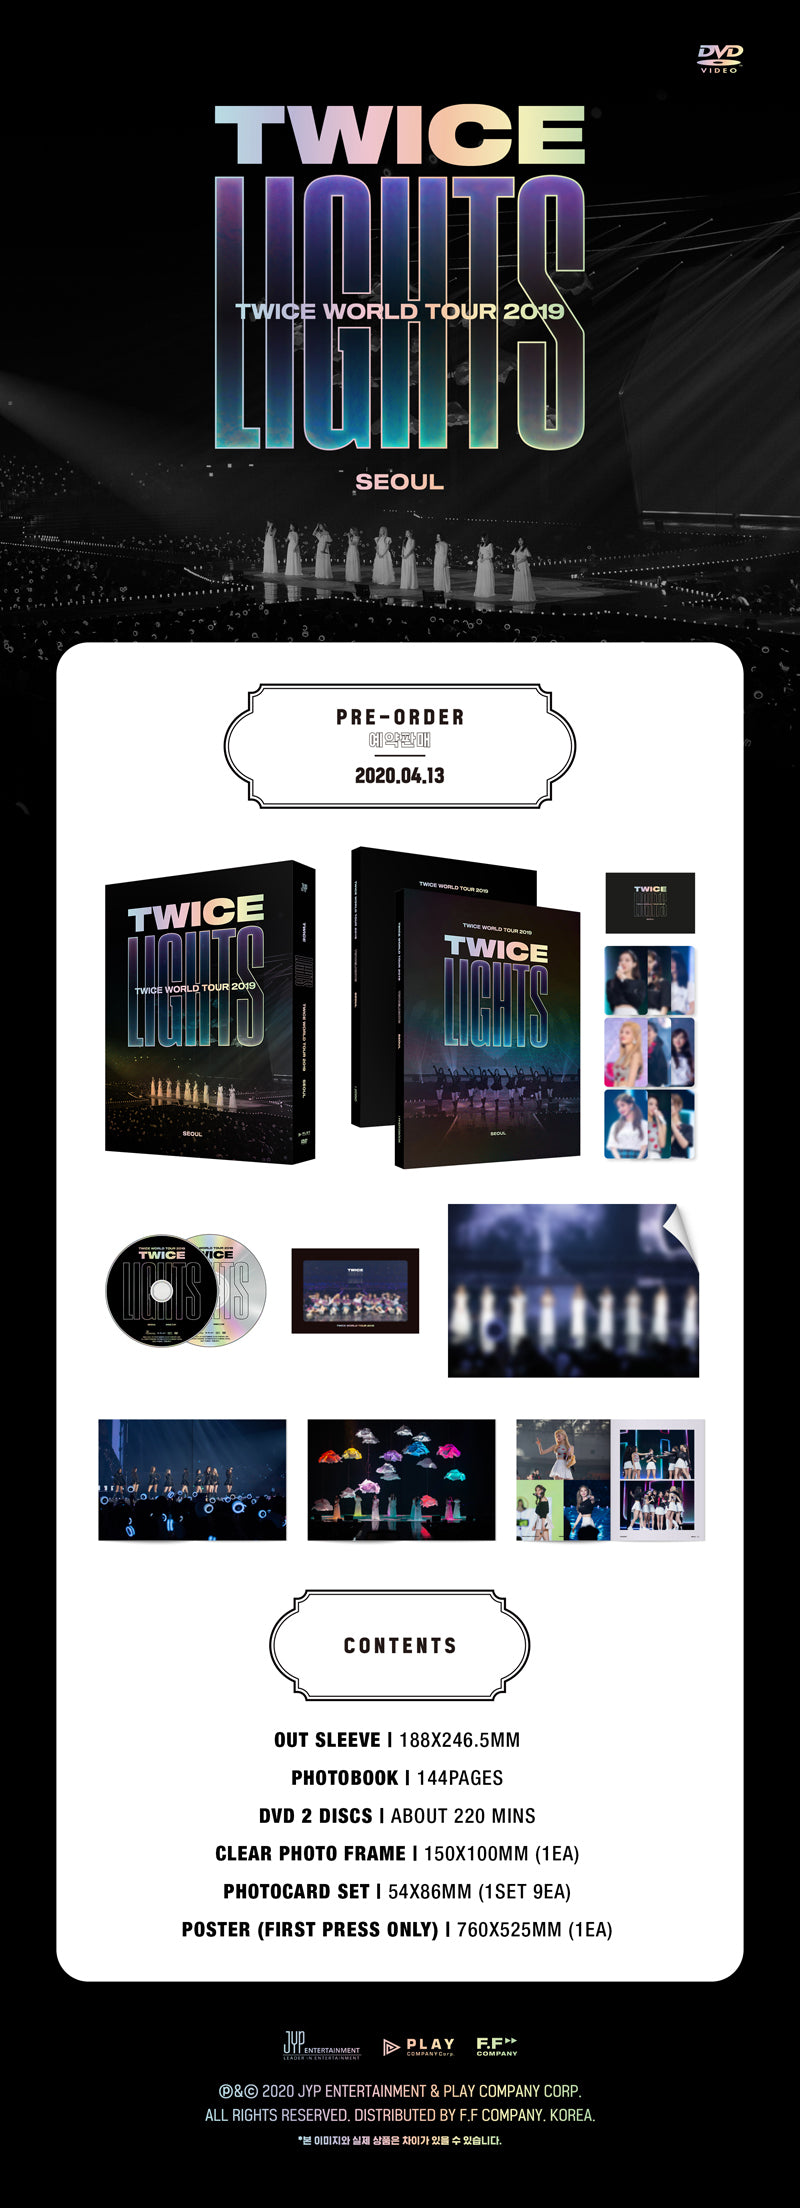 Dos veces - 2019 World Tour 'Twicelights' en Seúl (DVD)